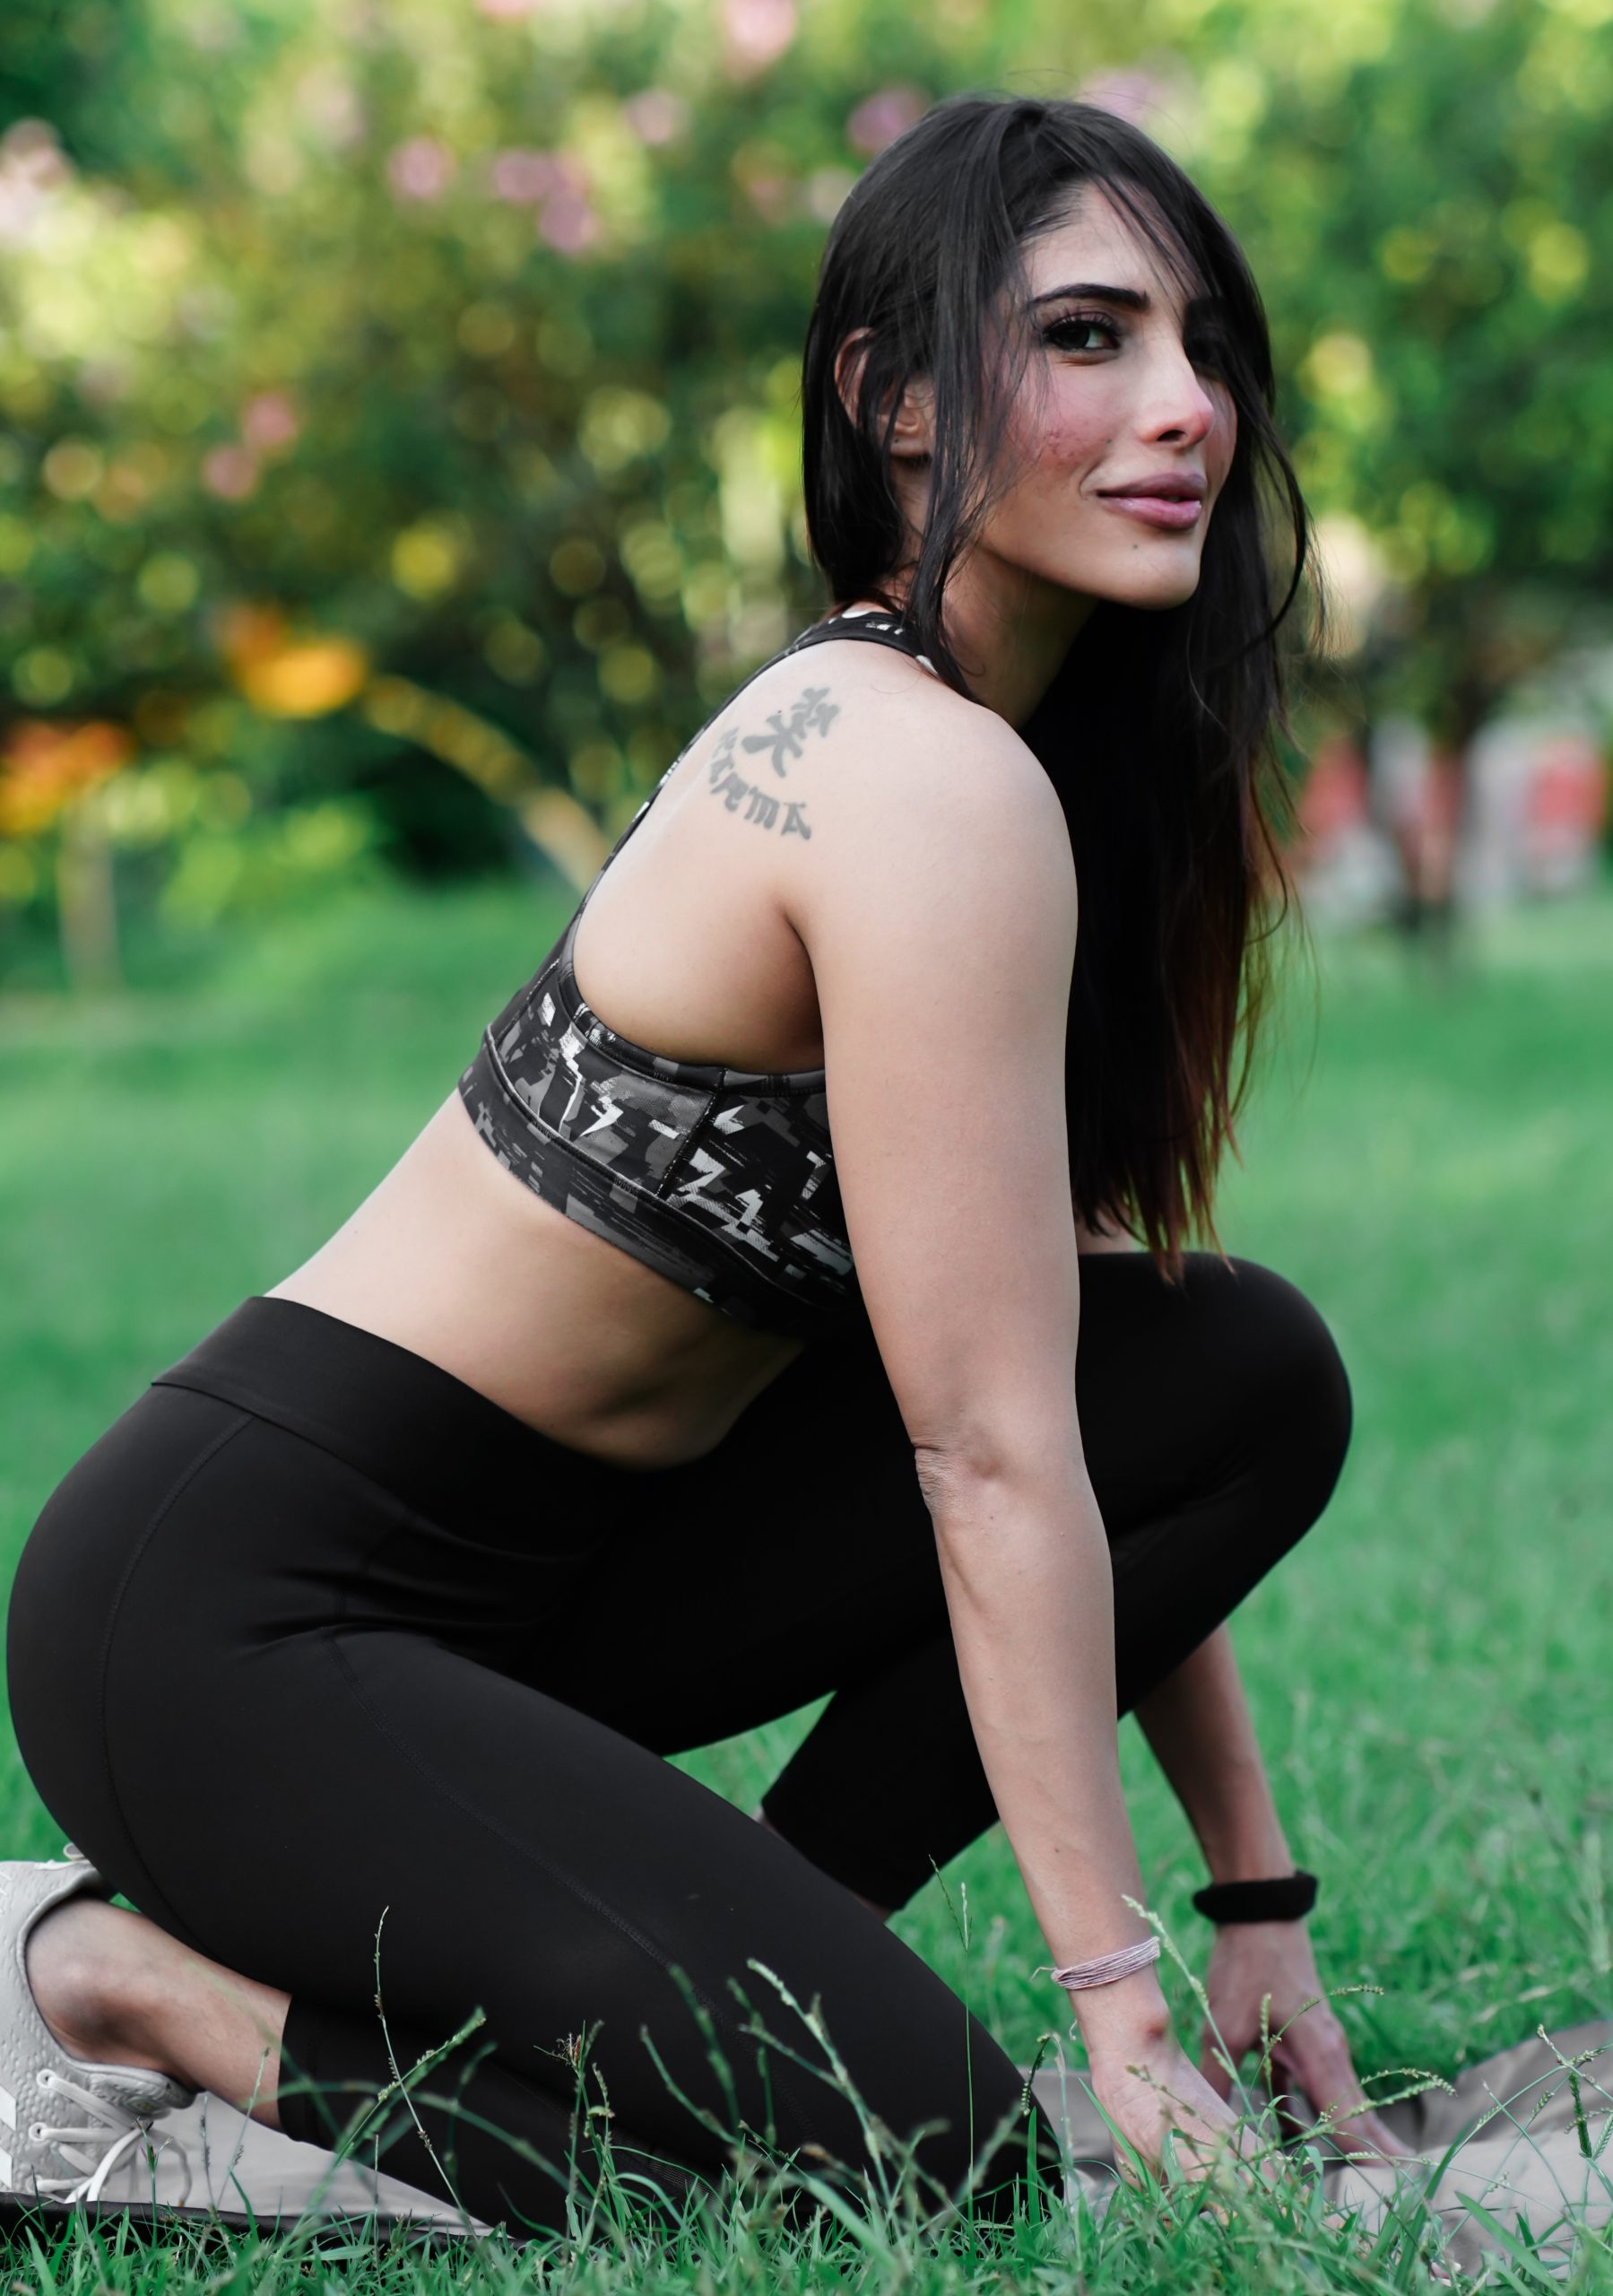 Female yoga trainer in park